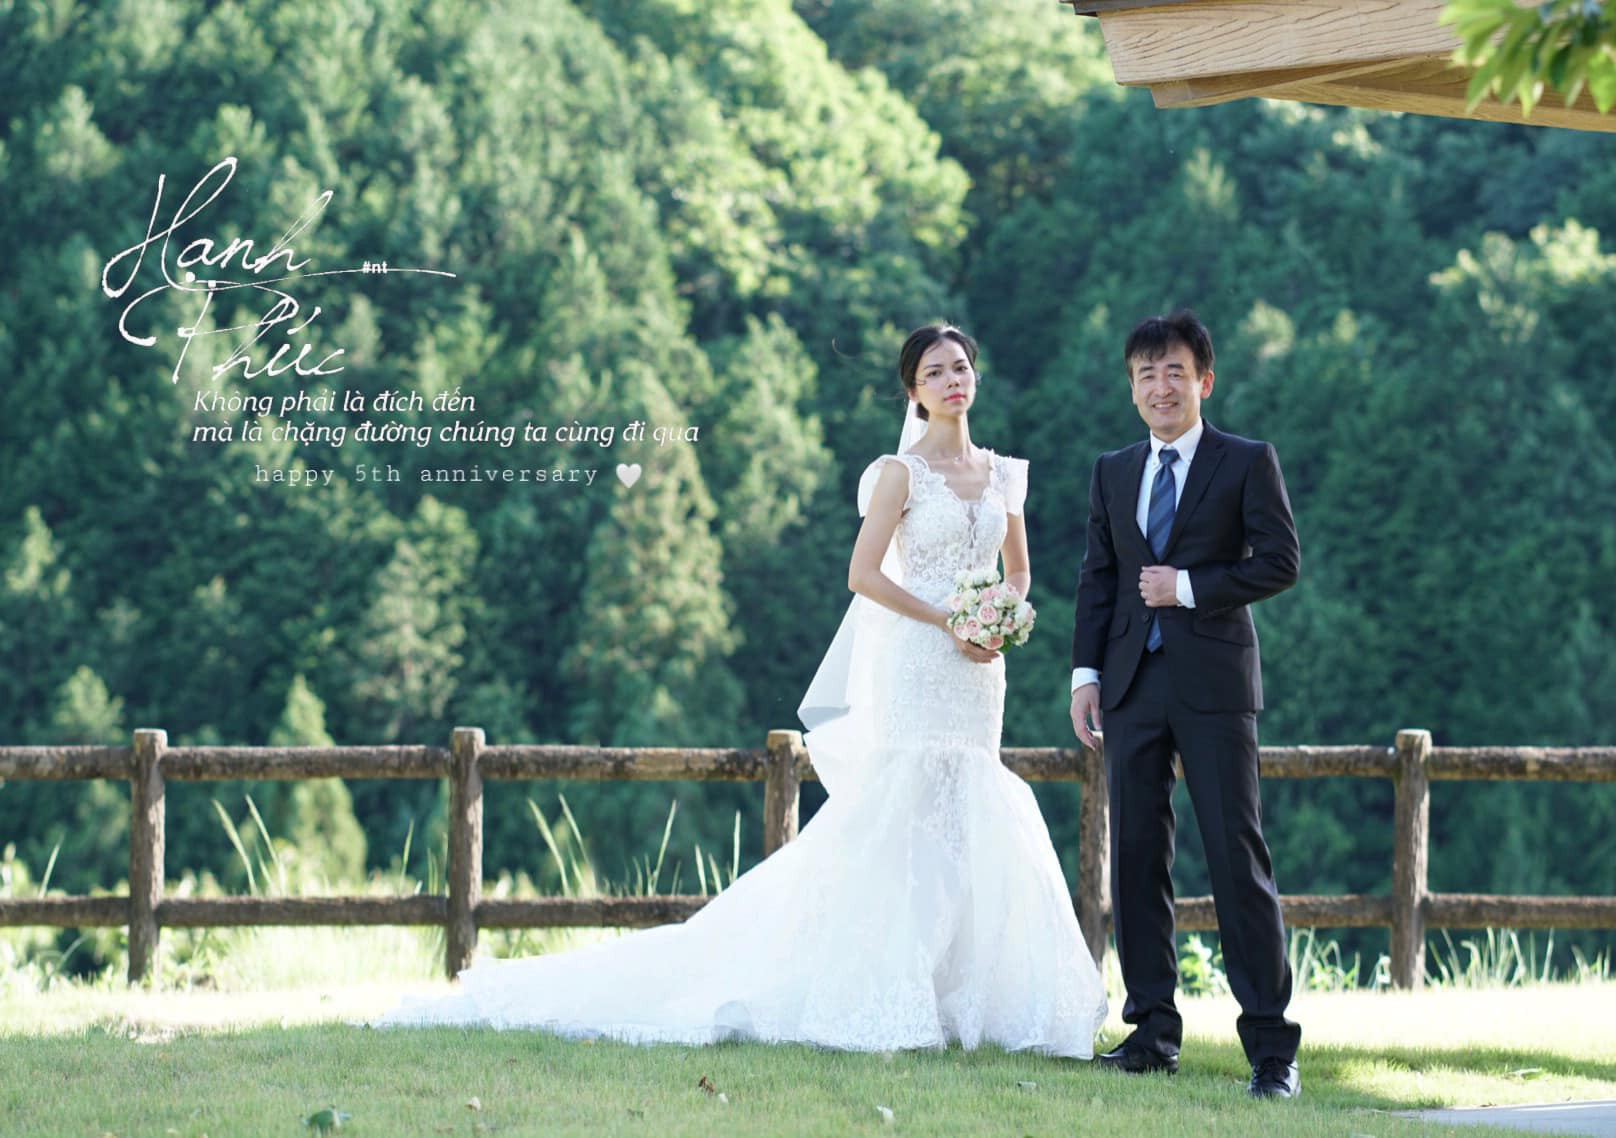 Chồng Nhật ngại tạo dáng, vợ Việt chờ 5 năm chụp ảnh cưới tuyệt đẹp 0 đồng - Ảnh 8.